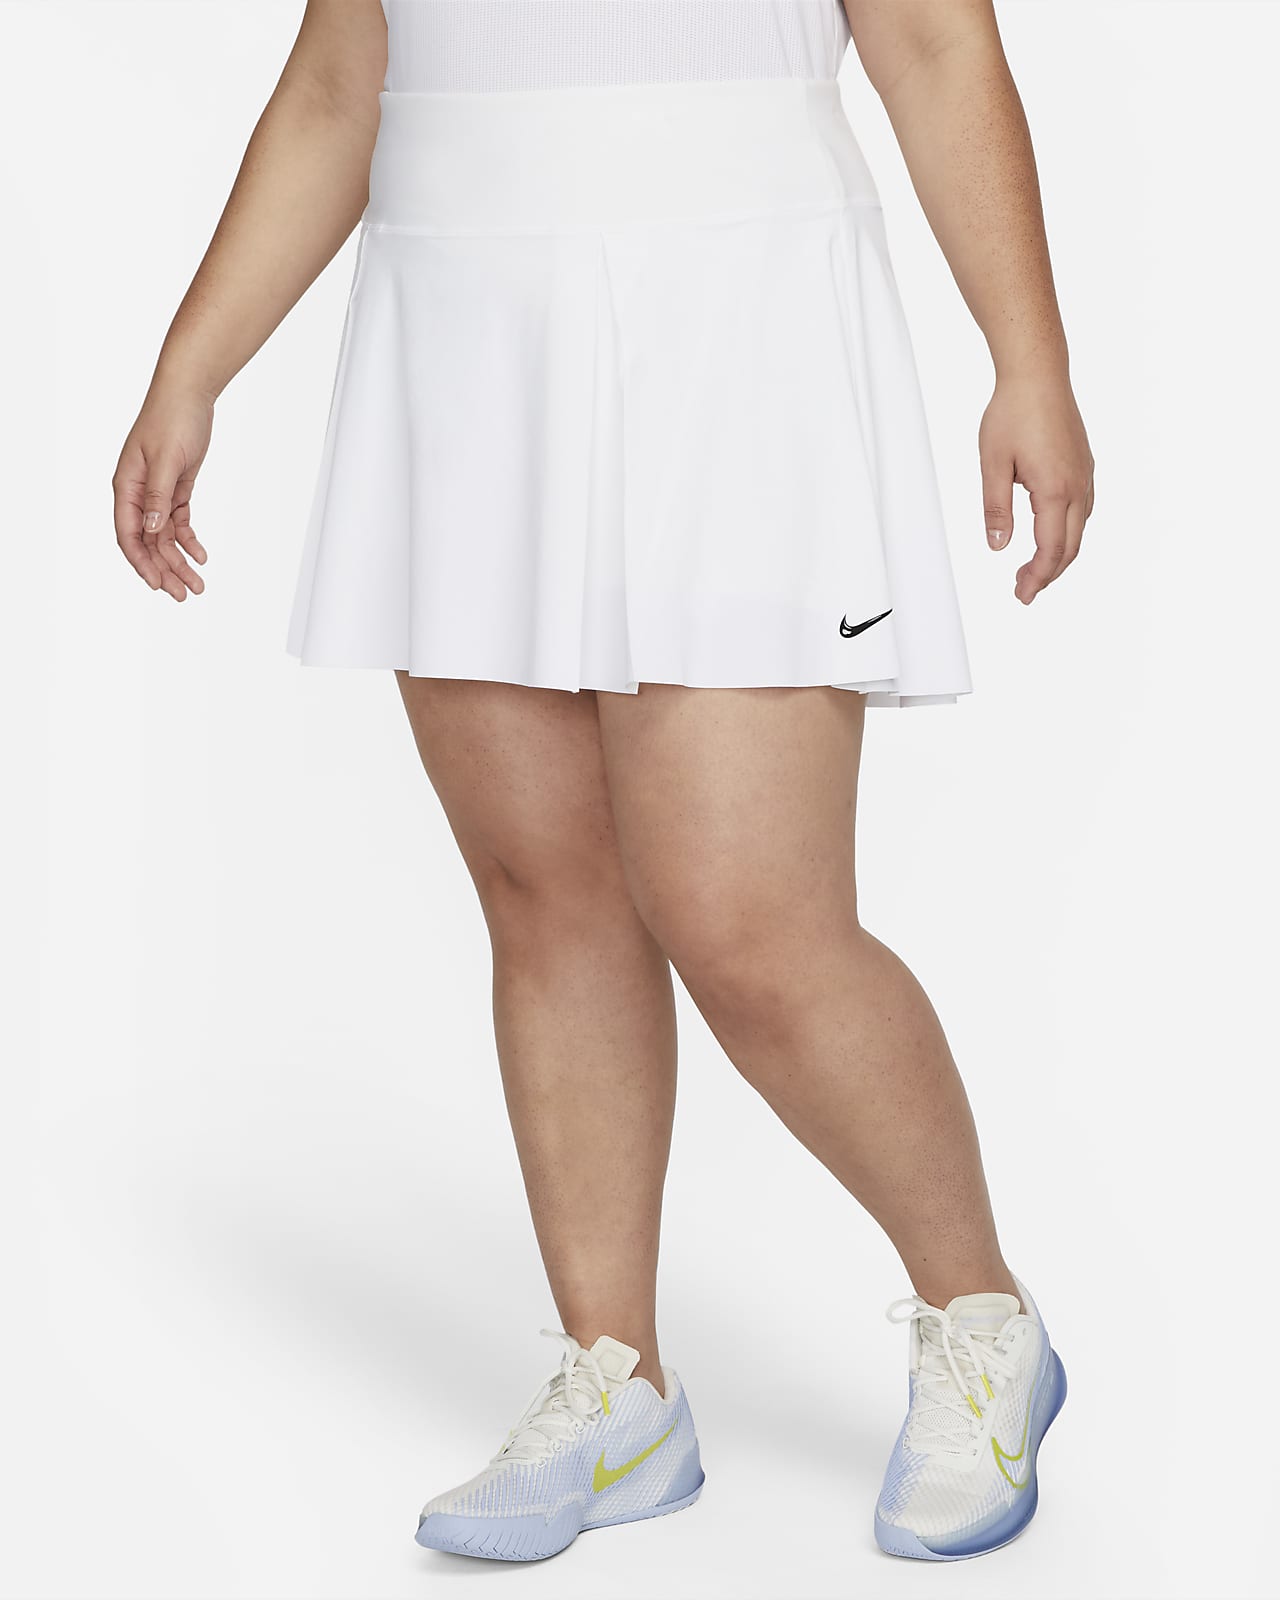 Nike Dri-FIT Advantage Women's Tennis Skirt (Plus Size).